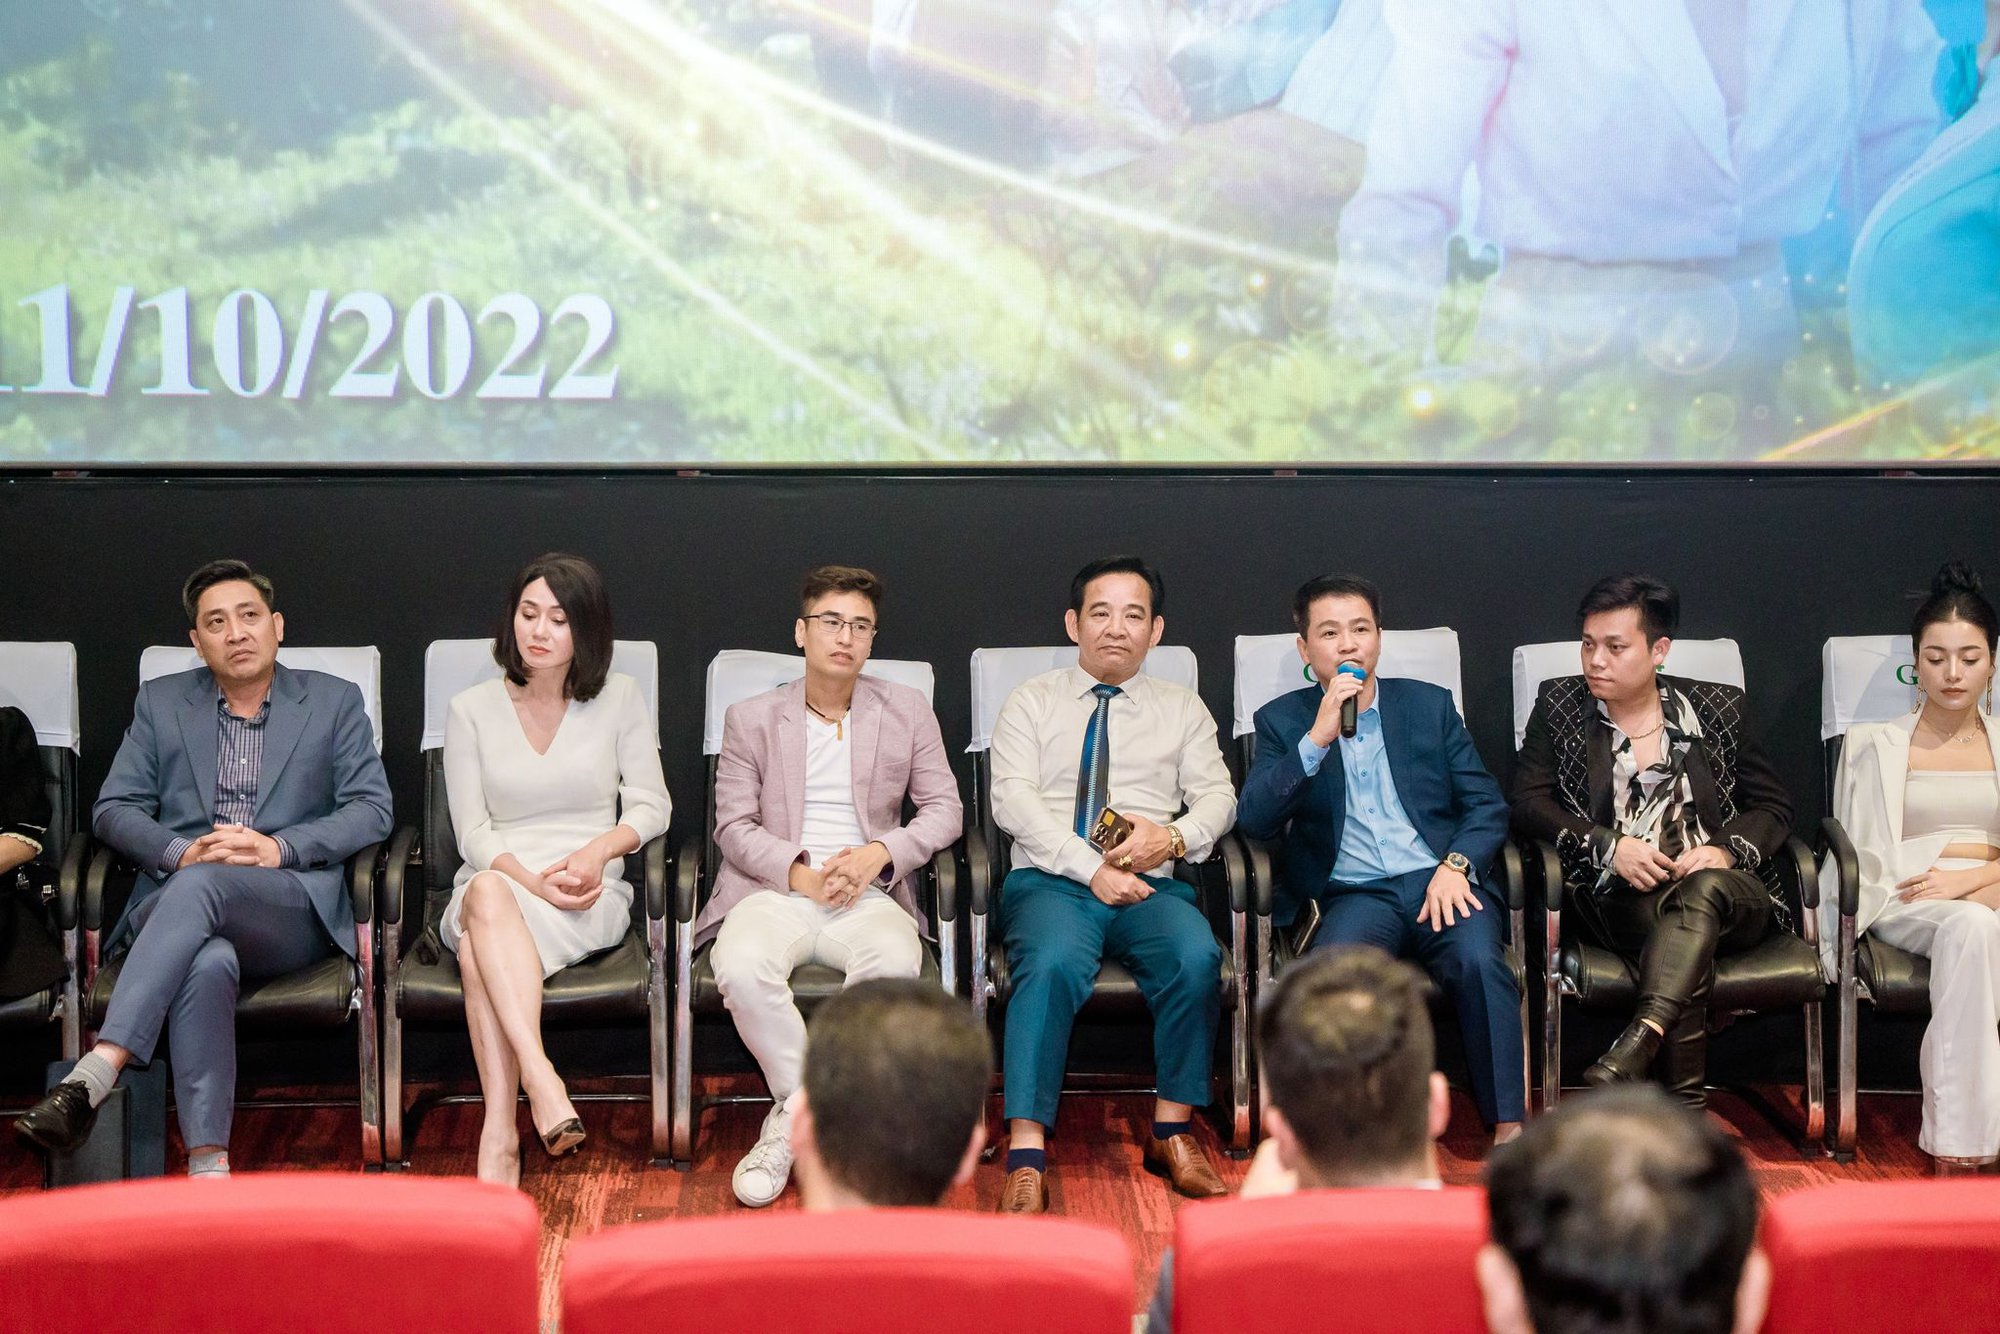 NSƯT Quang Tèo đóng vai bi: Tôi từng sợ khi mình xuất hiện trên phim khán giả sẽ cười - Ảnh 2.